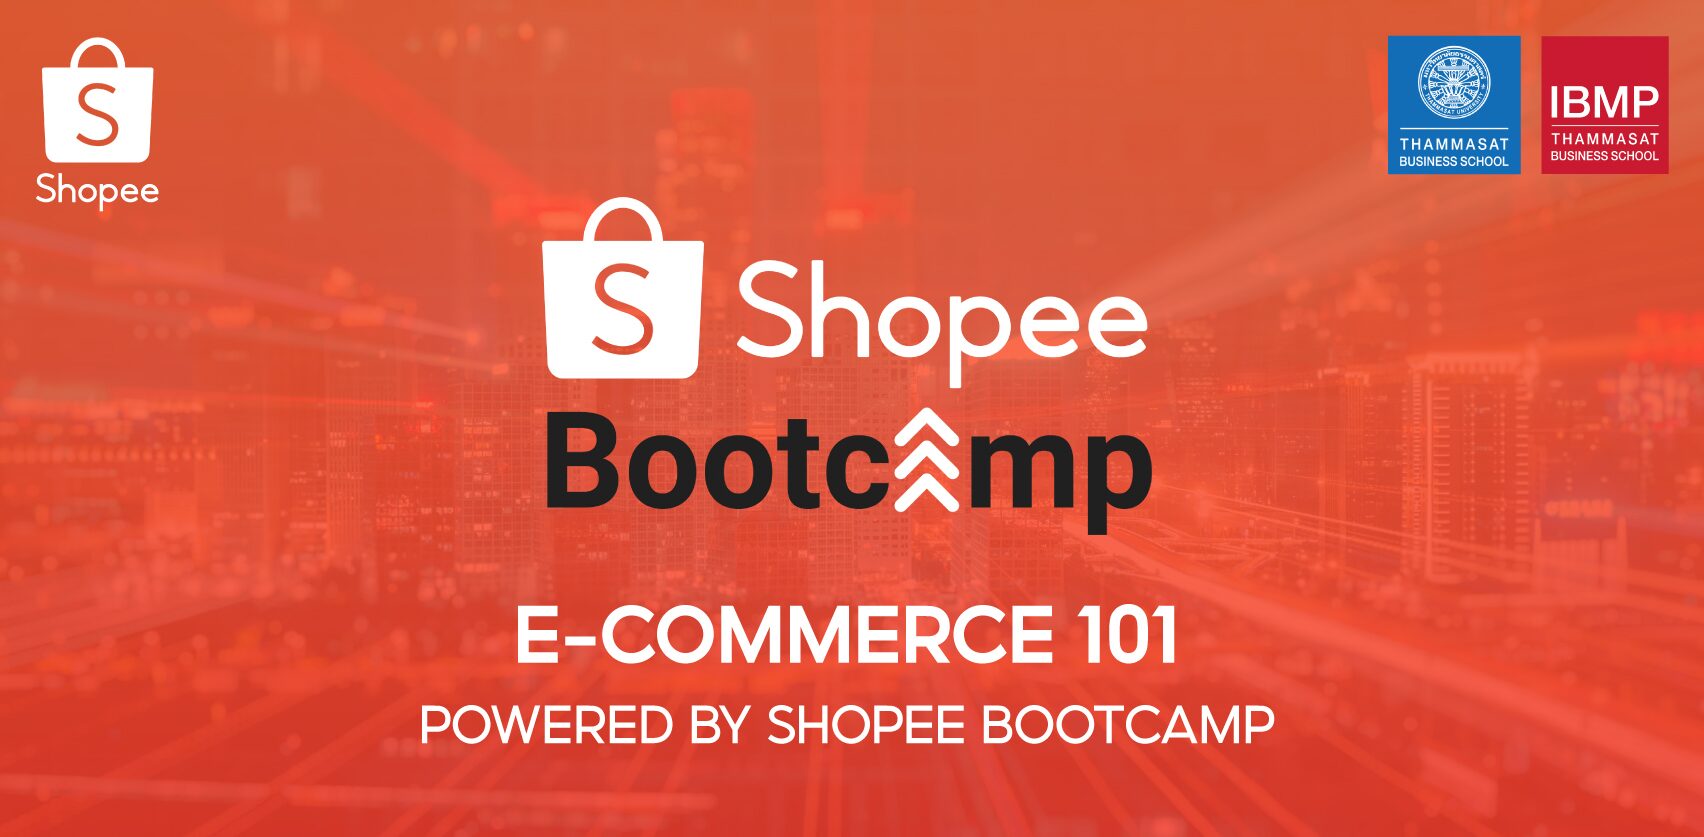 Shopee Bootcamp ขยายช่องทาง ติดอาวุธด้านอีคอมเมิร์ซ ให้ผู้ประกอบการรุ่นใหม่